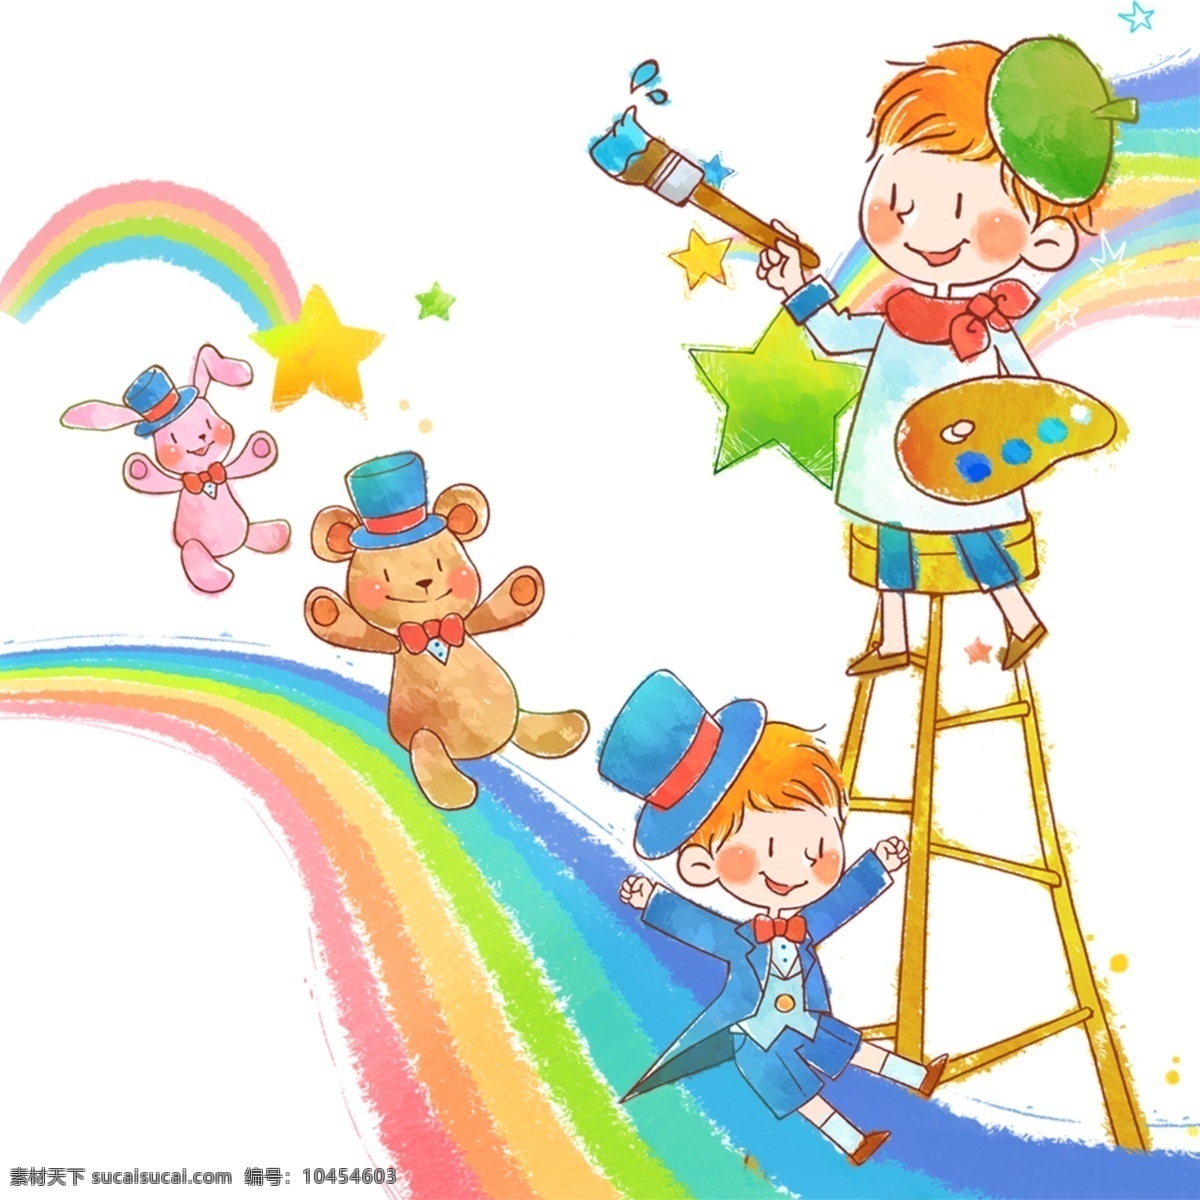 小王子 卡通 男孩 小熊 兔子 戴礼帽 彩虹 滑梯 画画 小画家 梯子 油画 可爱 好朋友 人物图库 儿童幼儿 白色